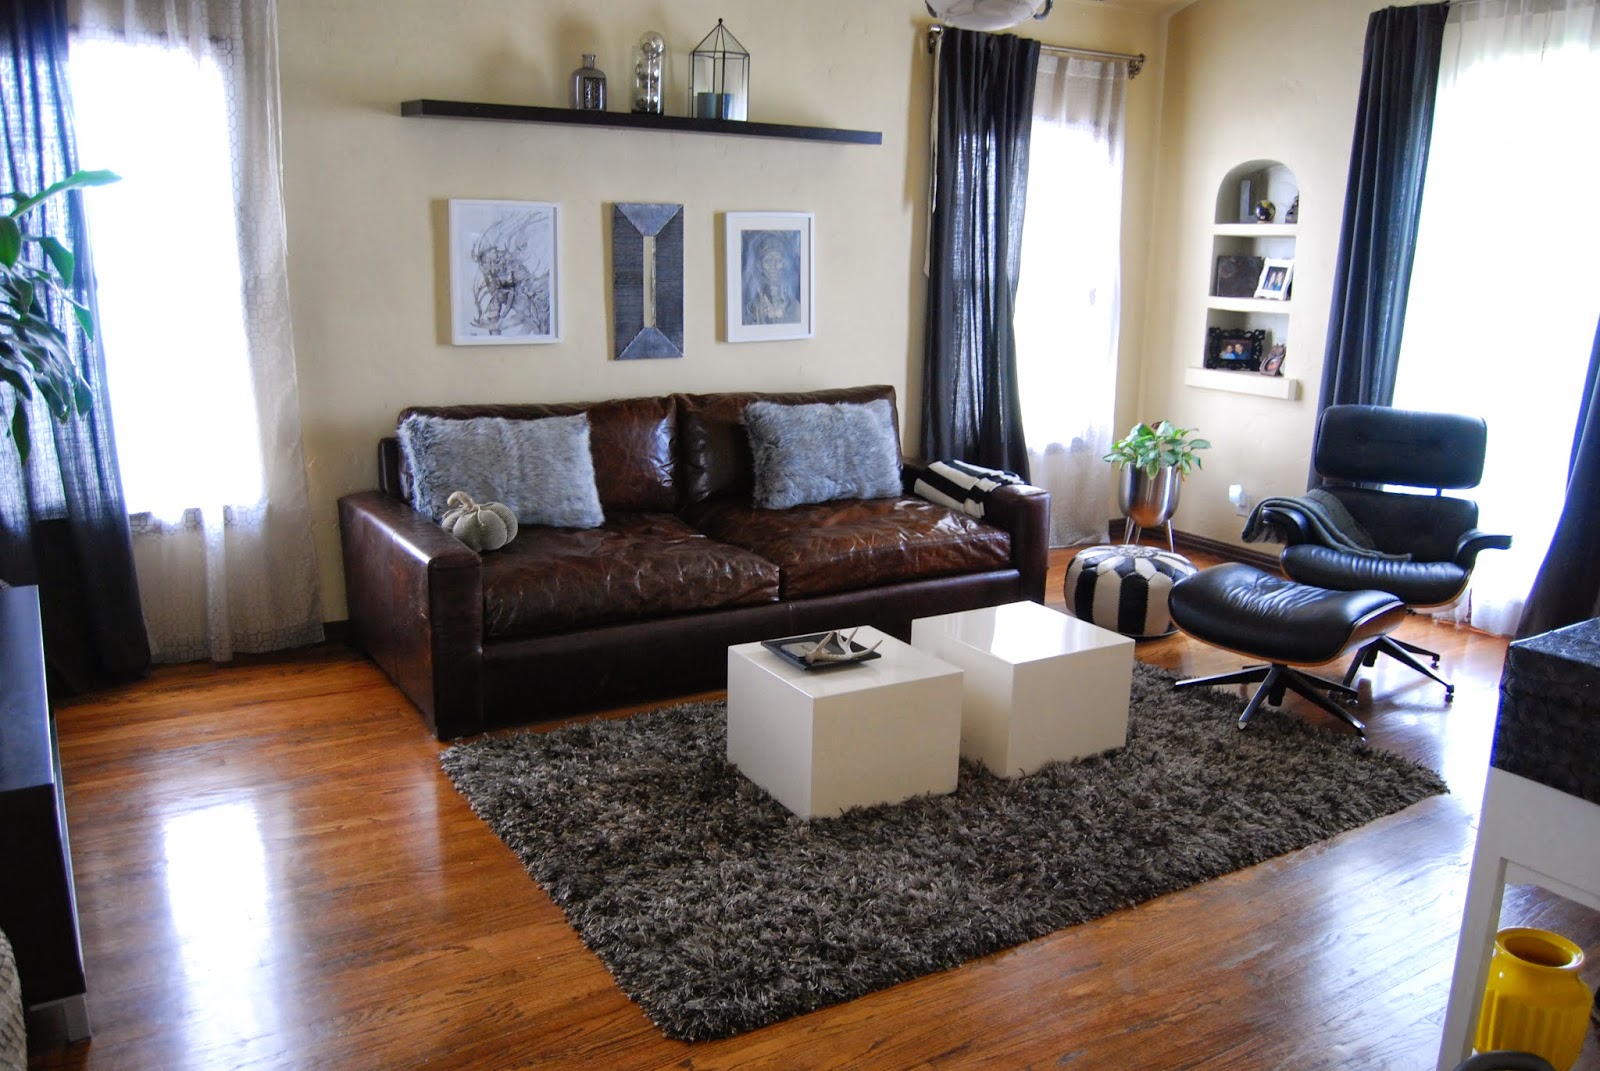 http://abeautynerd.blogspot.com/2013/10/transforming-living-room-part-2.html